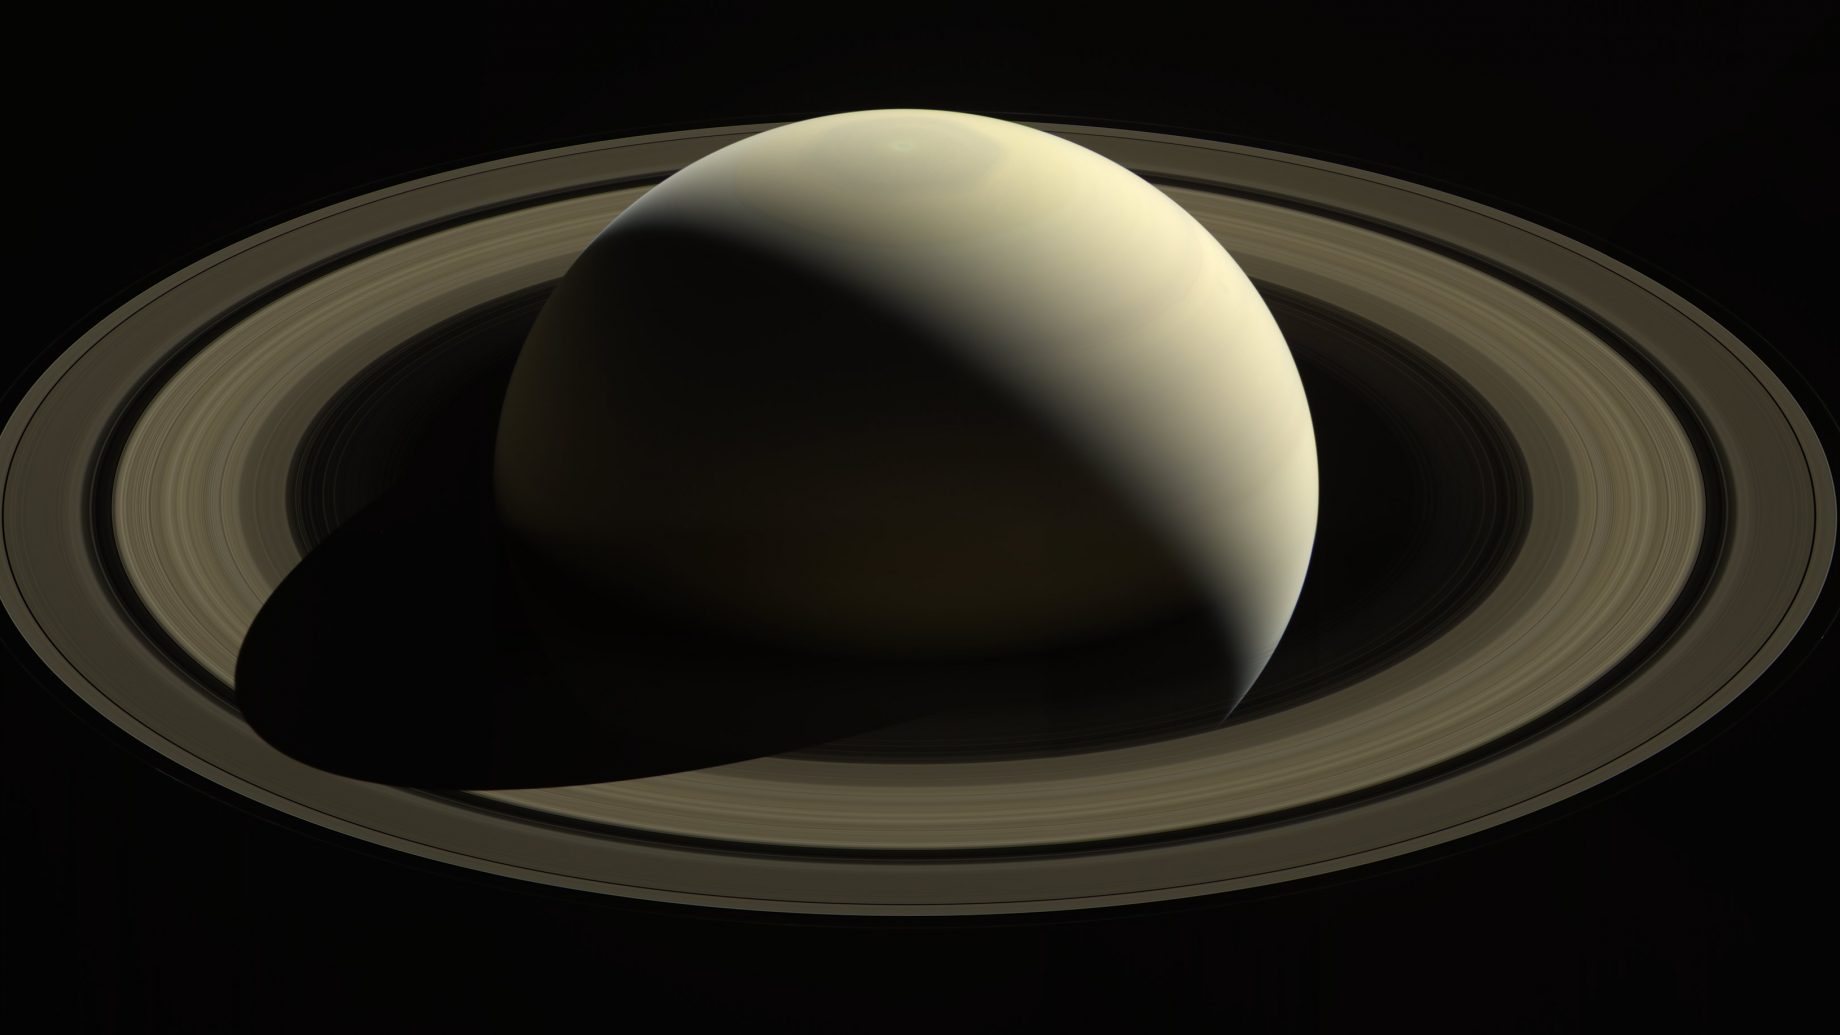 No estudo foram utilizadas várias simulações numéricas e dados da recente missão Cassini (um projeto conjunto da NASA, da Agência Espacial europeia e da Agência Espacial italiana) cujo objetivo visava estudar Saturno